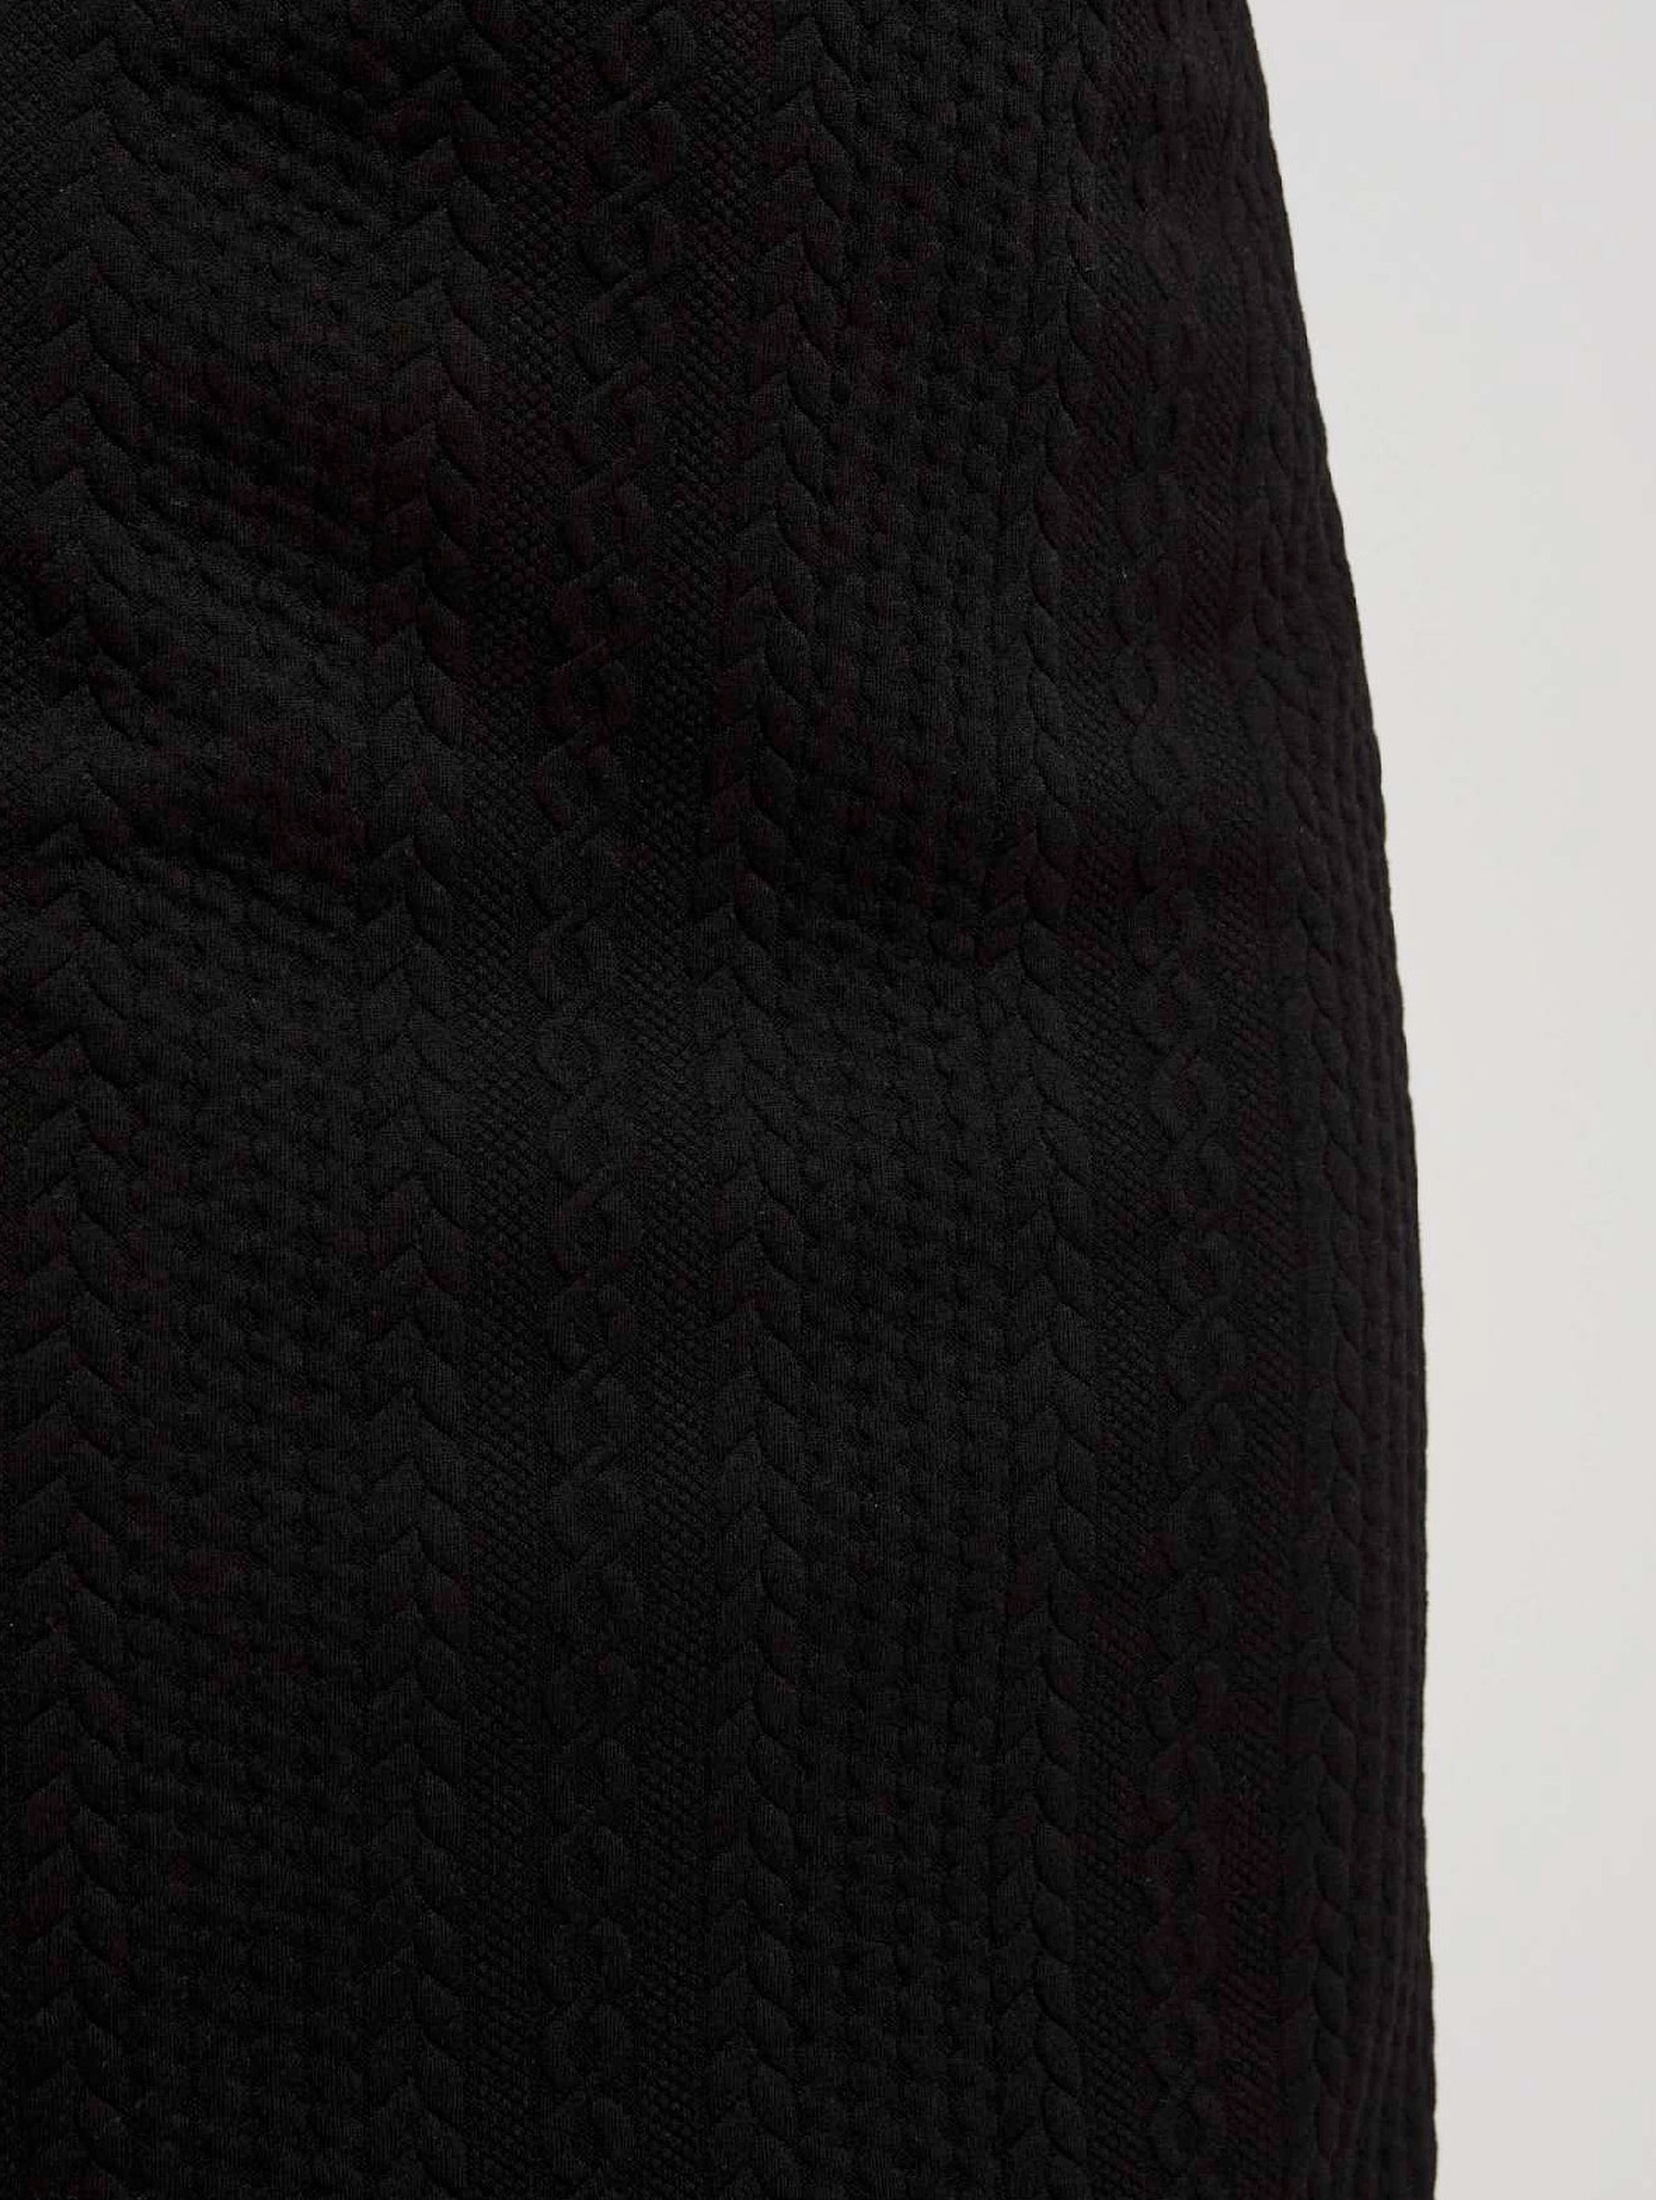 Czarna żakardowa spódnica damska ołówkowa